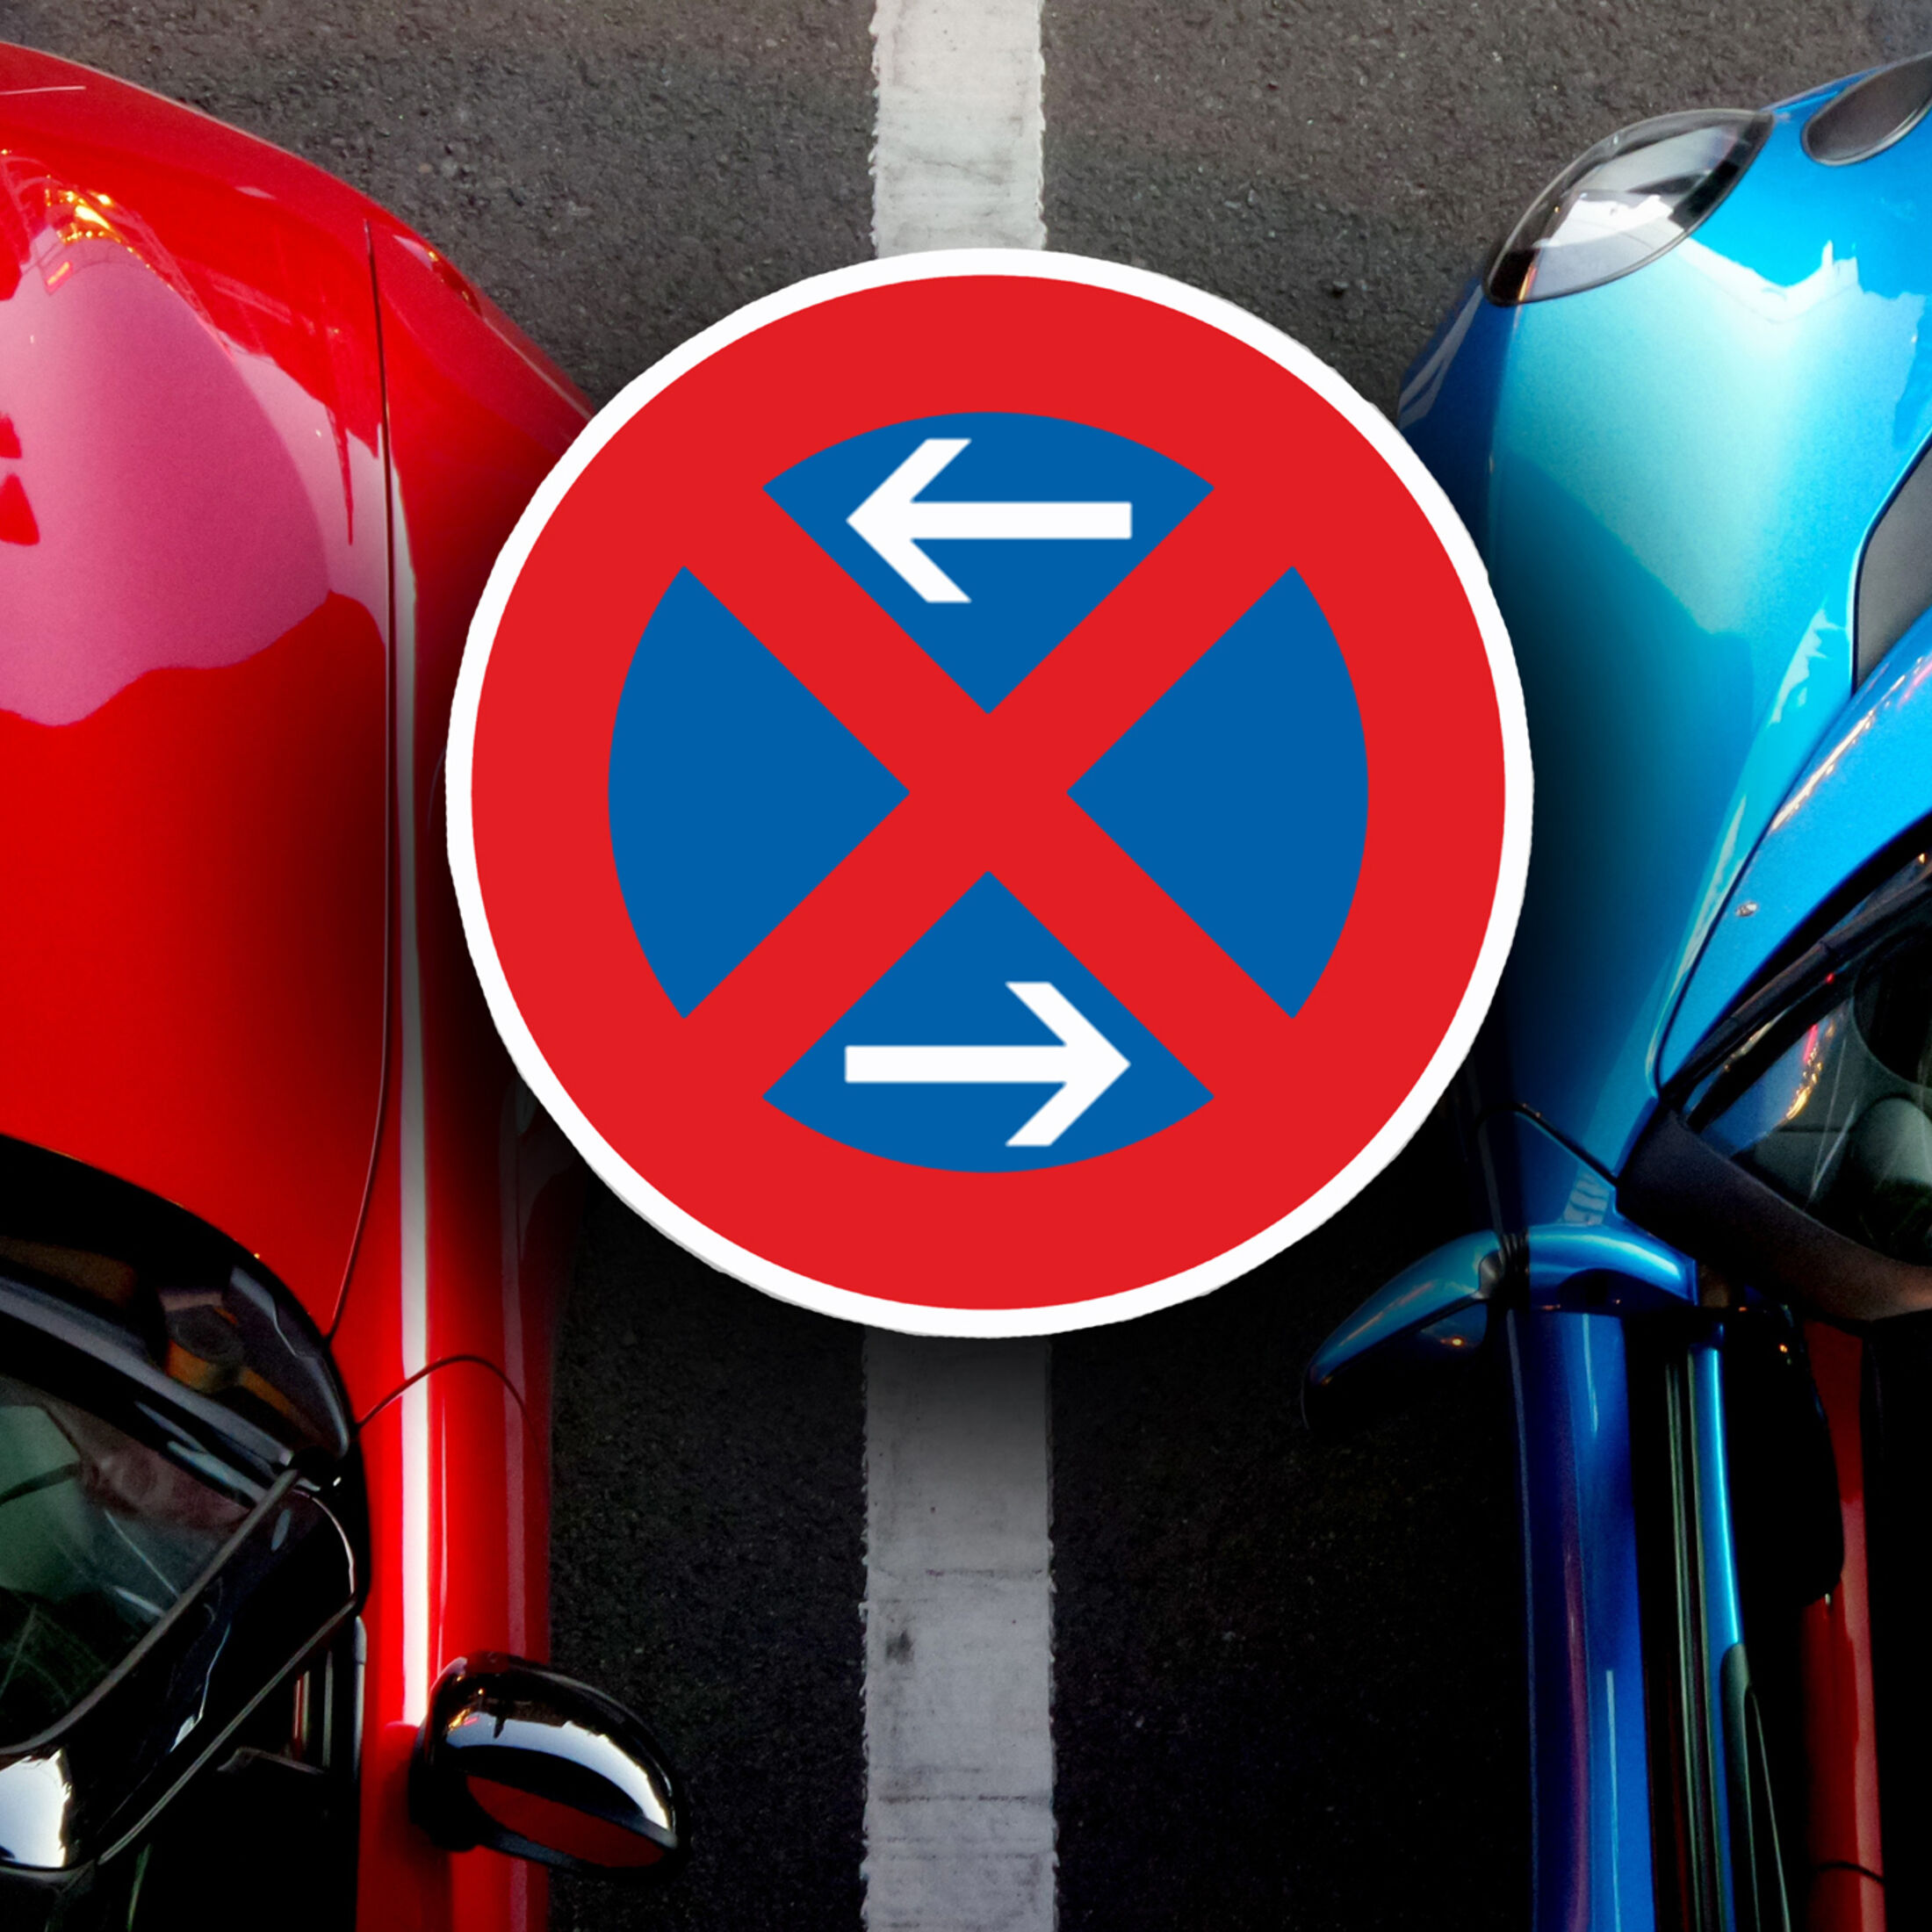 Parkkralle, Ventilwächter und Co.: Fiese Blockaden für Parksünder